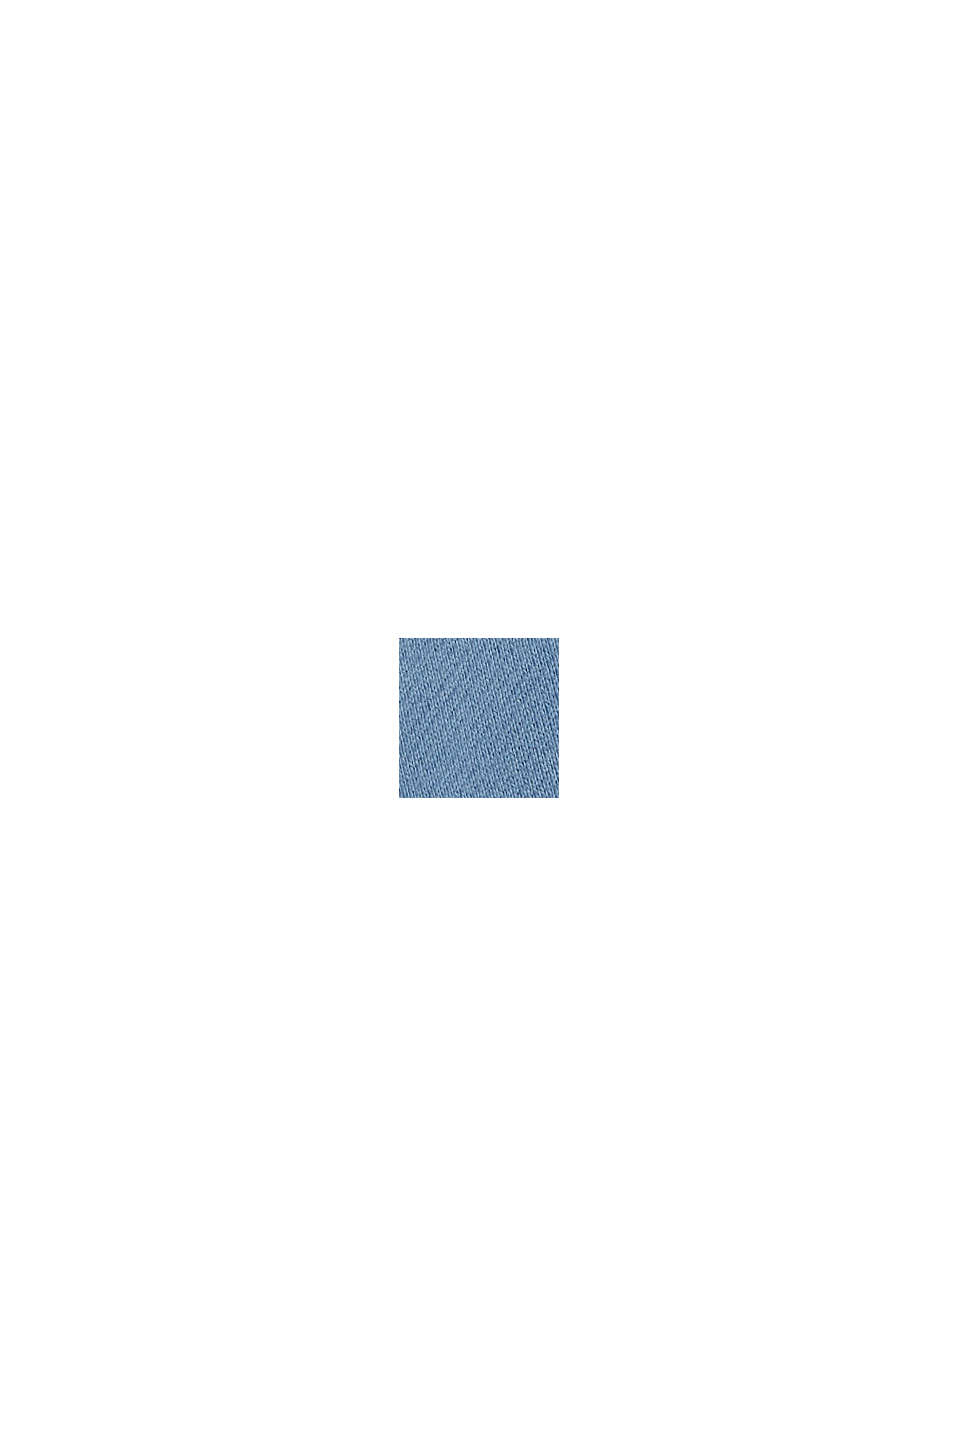 Bluza z kapturem ze zrównoważonej bawełny, BLUE, swatch